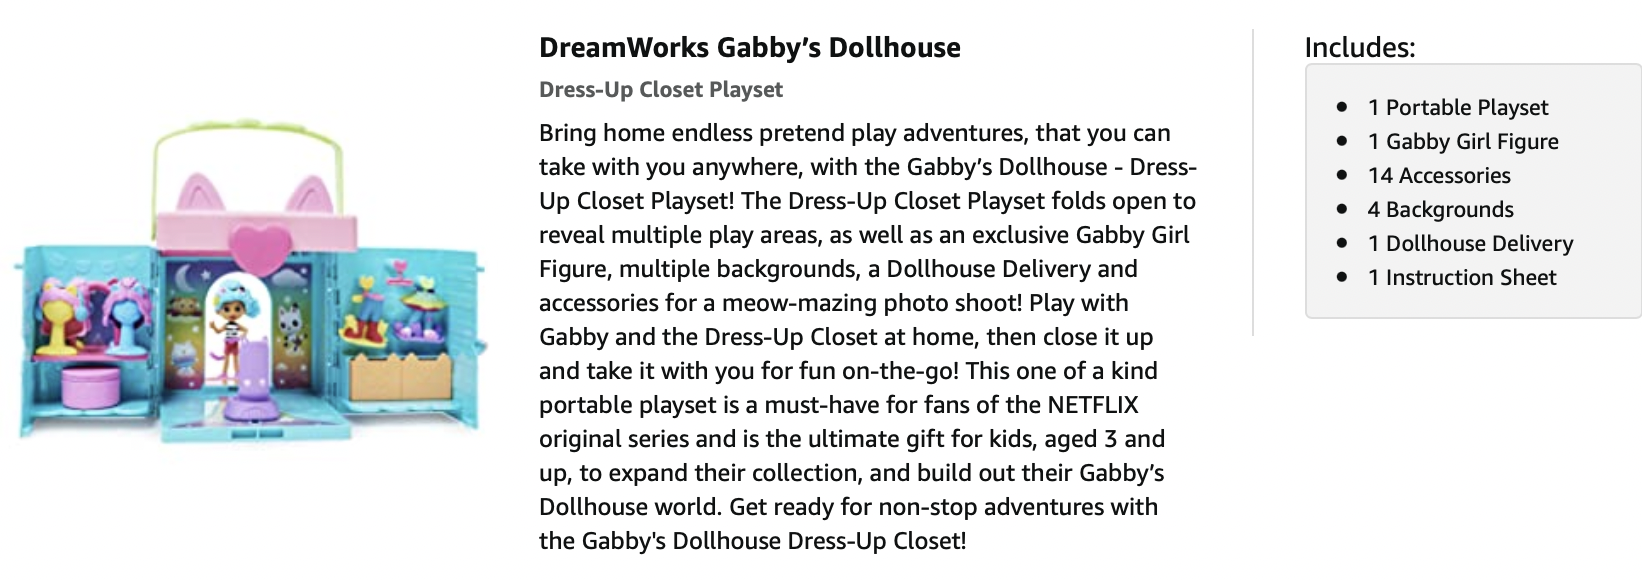 Gabby's Dollhouse, Dress-Up Closet Portable Playset with a Gabby